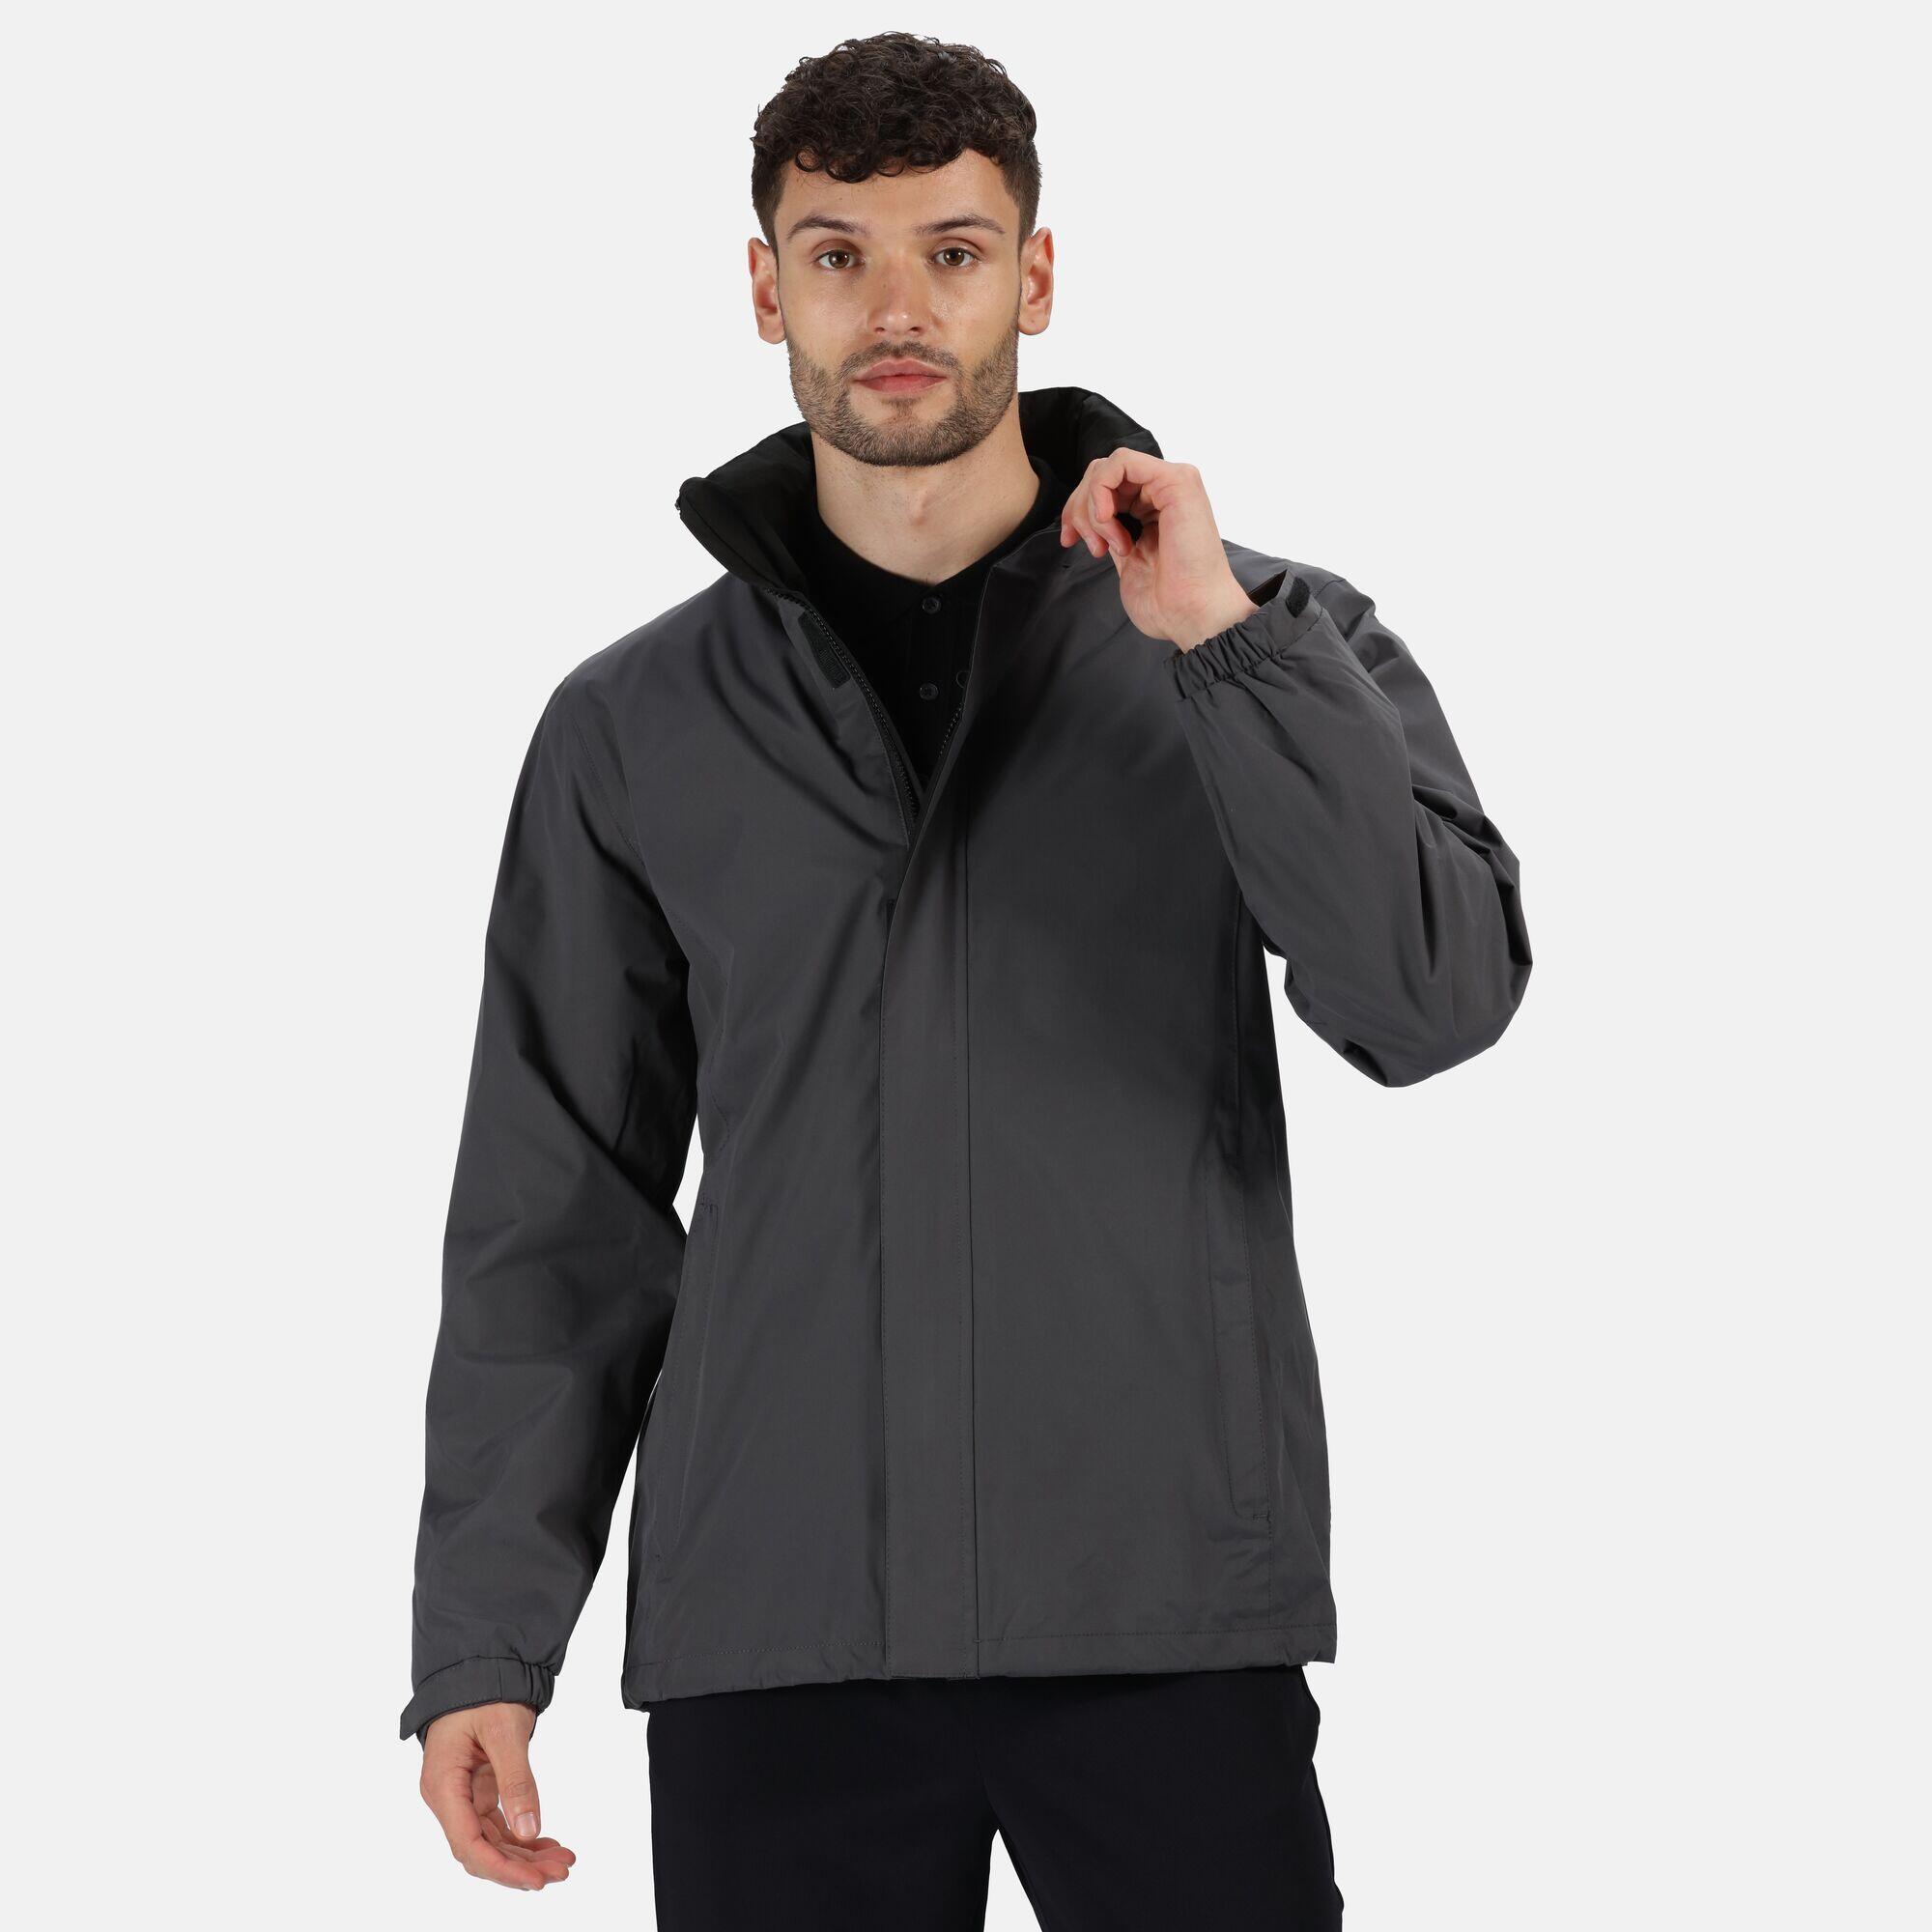 Mens Standout Ardmore Jacket (Waterproof & Windproof) (Seal Grey/Black) 4/5